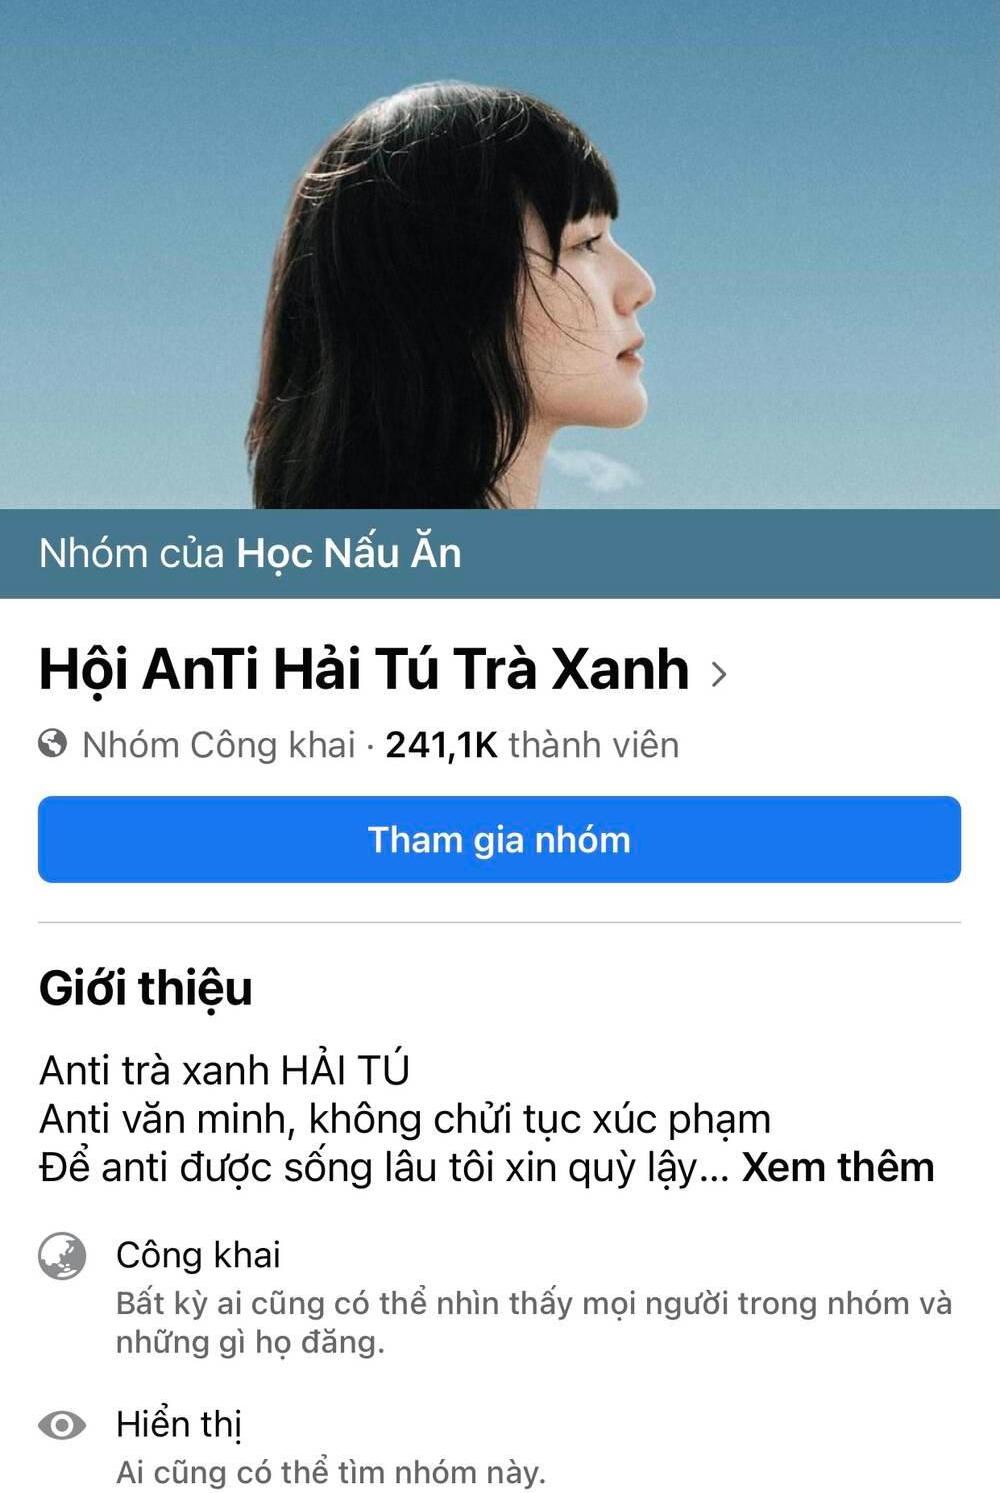 'Vượt mặt' Hương Giang, Hải Tú là nghệ sĩ có group nhiều anti-fan nhất Vbiz - Ảnh 2